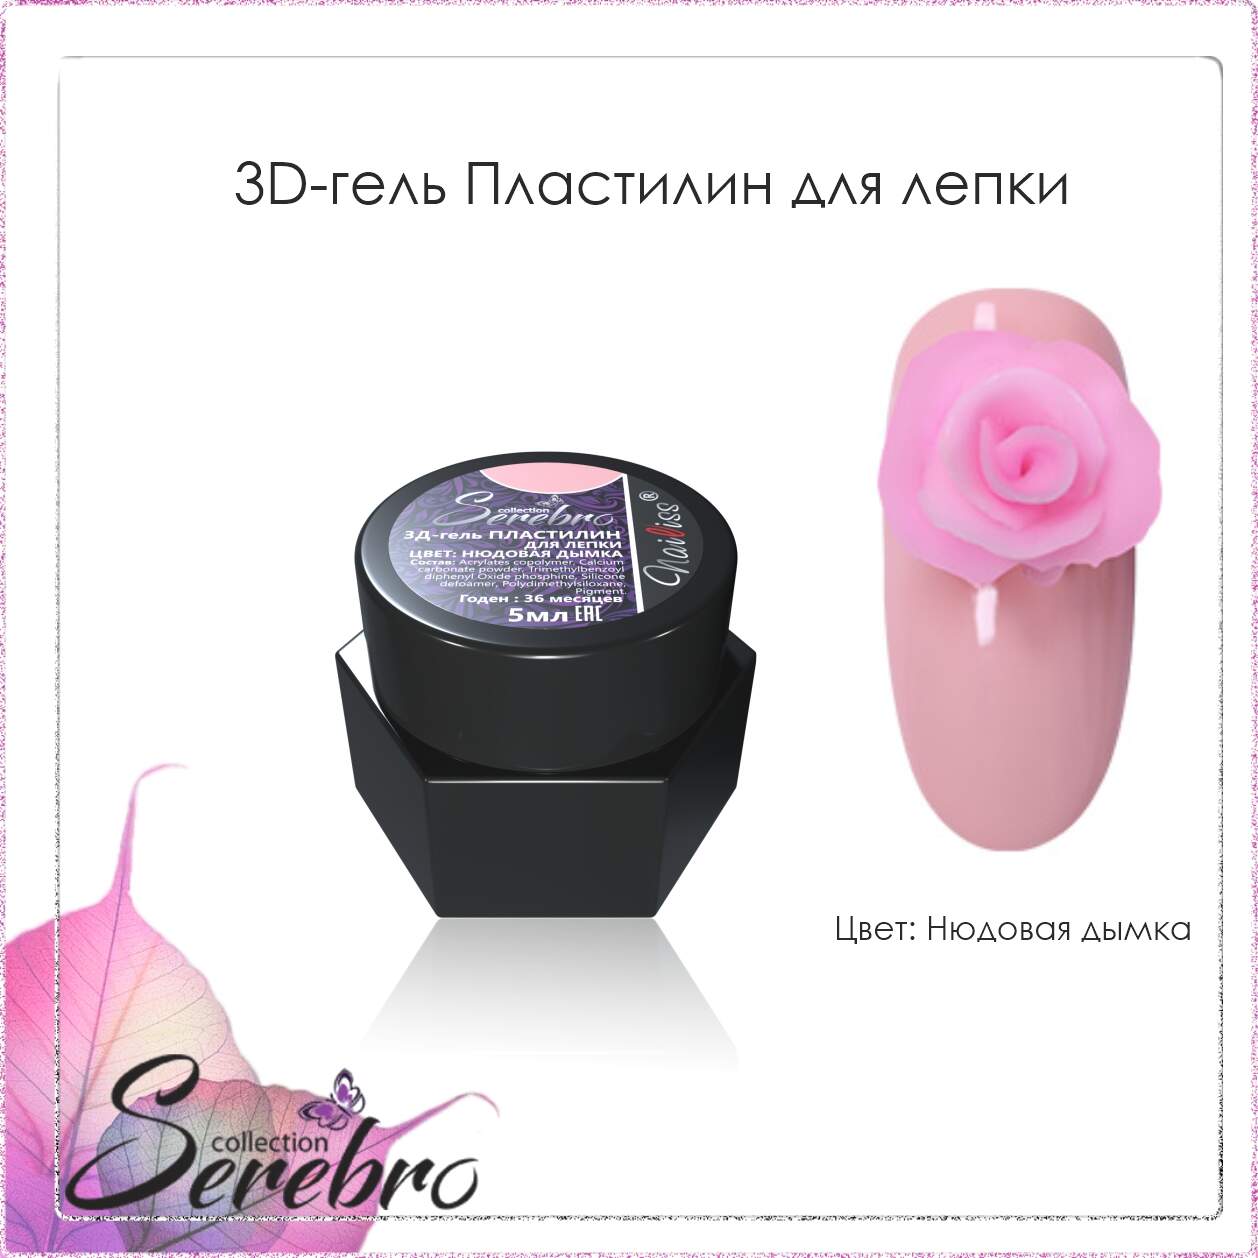 3D гель Пластилин для лепки "Serebro" (нюдовая дымка), 5 мл